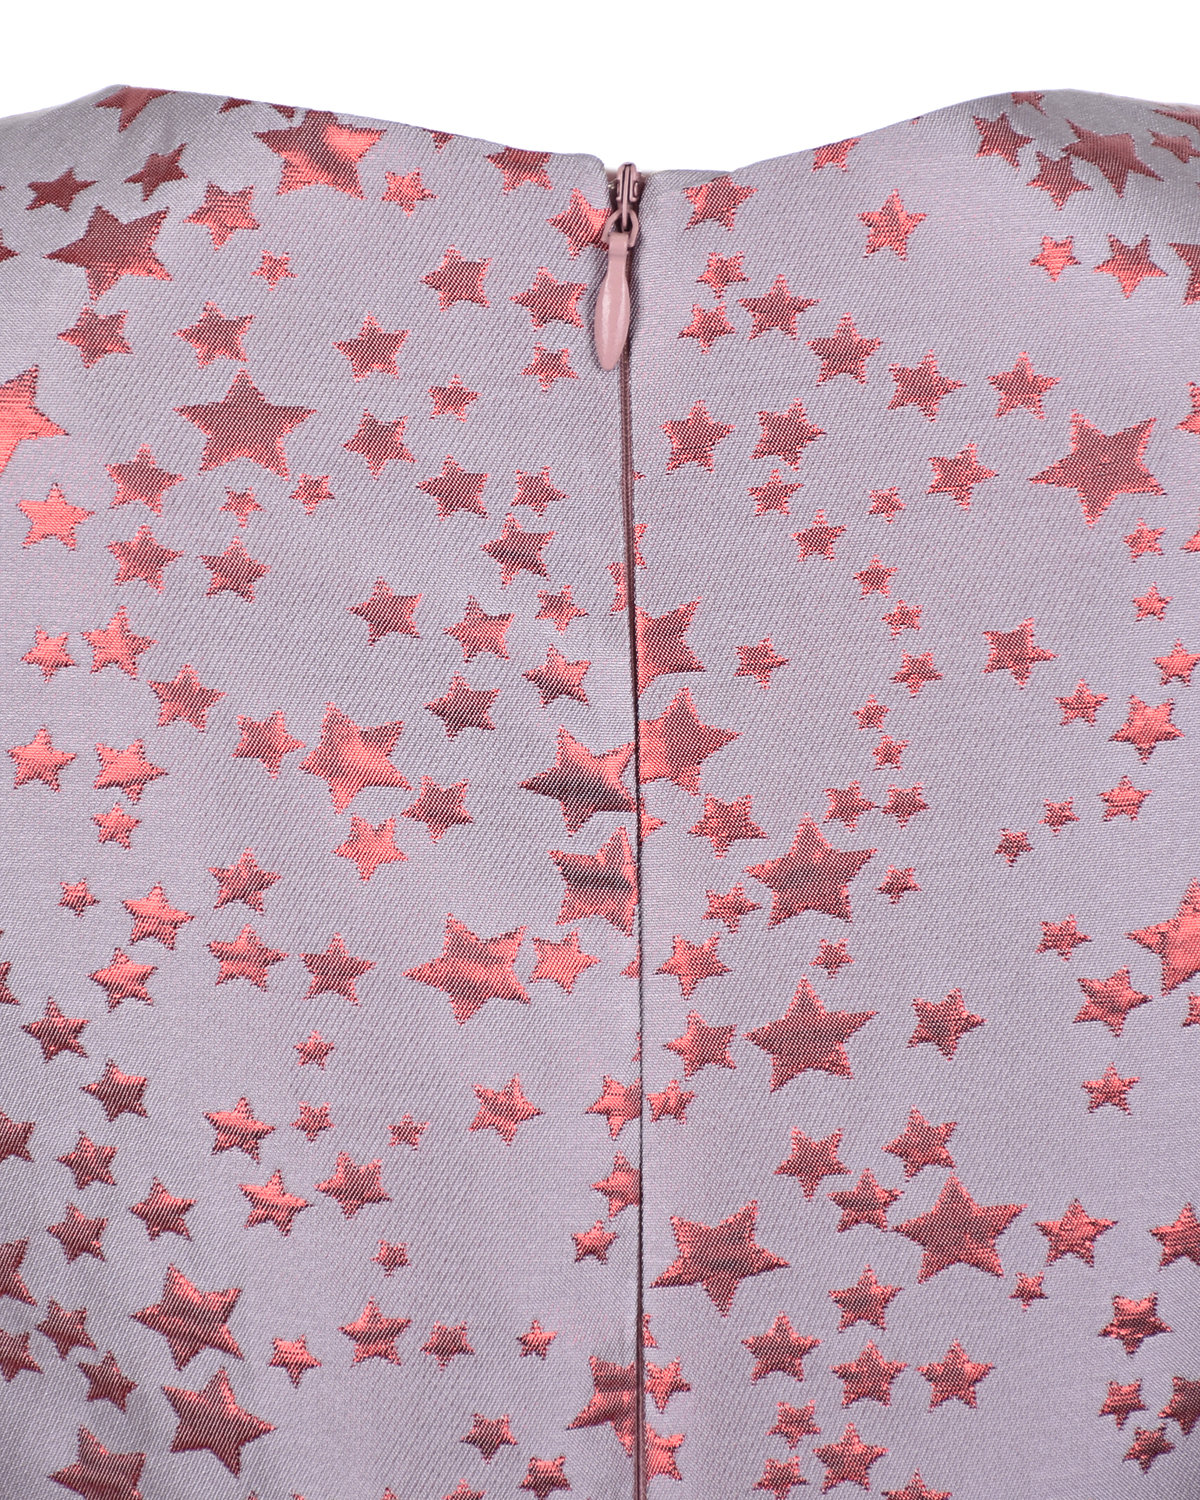 Жаккардовое платье с декором в форме звездочек Zhanna&Anna, размер 104, цвет розовый - фото 3